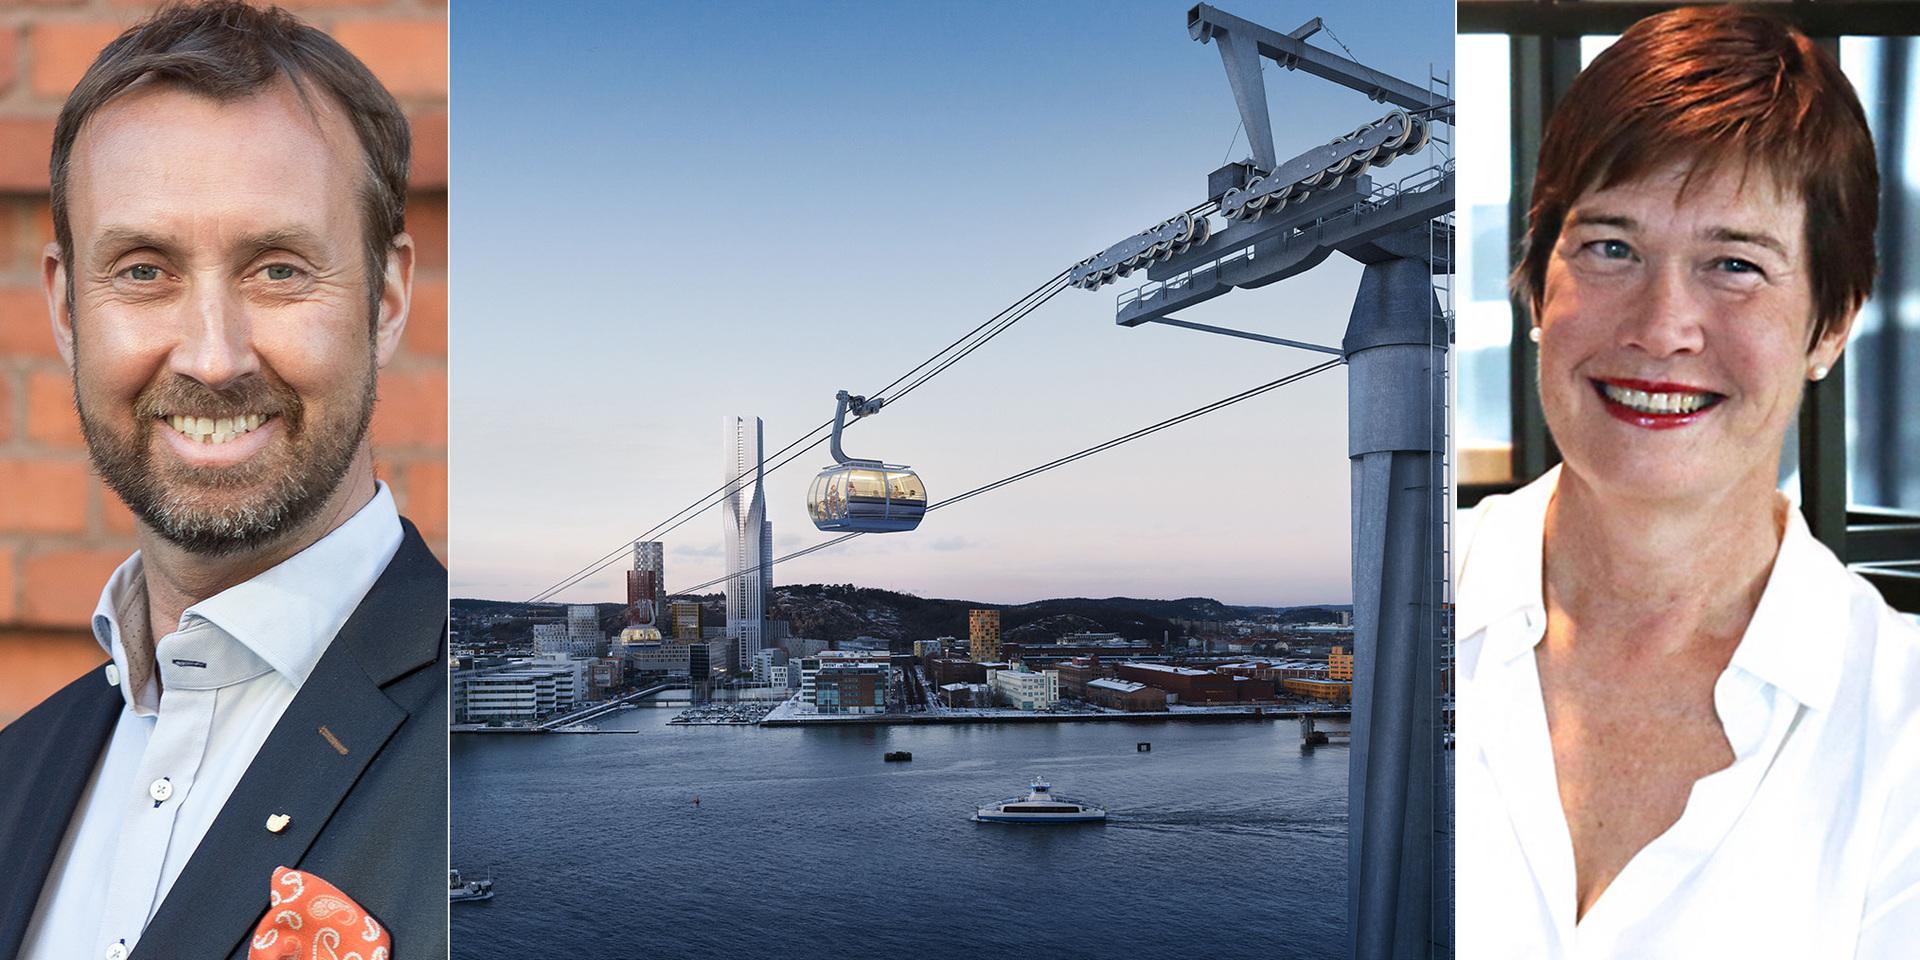 En kapacitetsstark stadslinbana som ingår i kollektivtrafiken skulle knyta ihop viktiga och expanderande delar av Göteborg, skriver debattörerna.